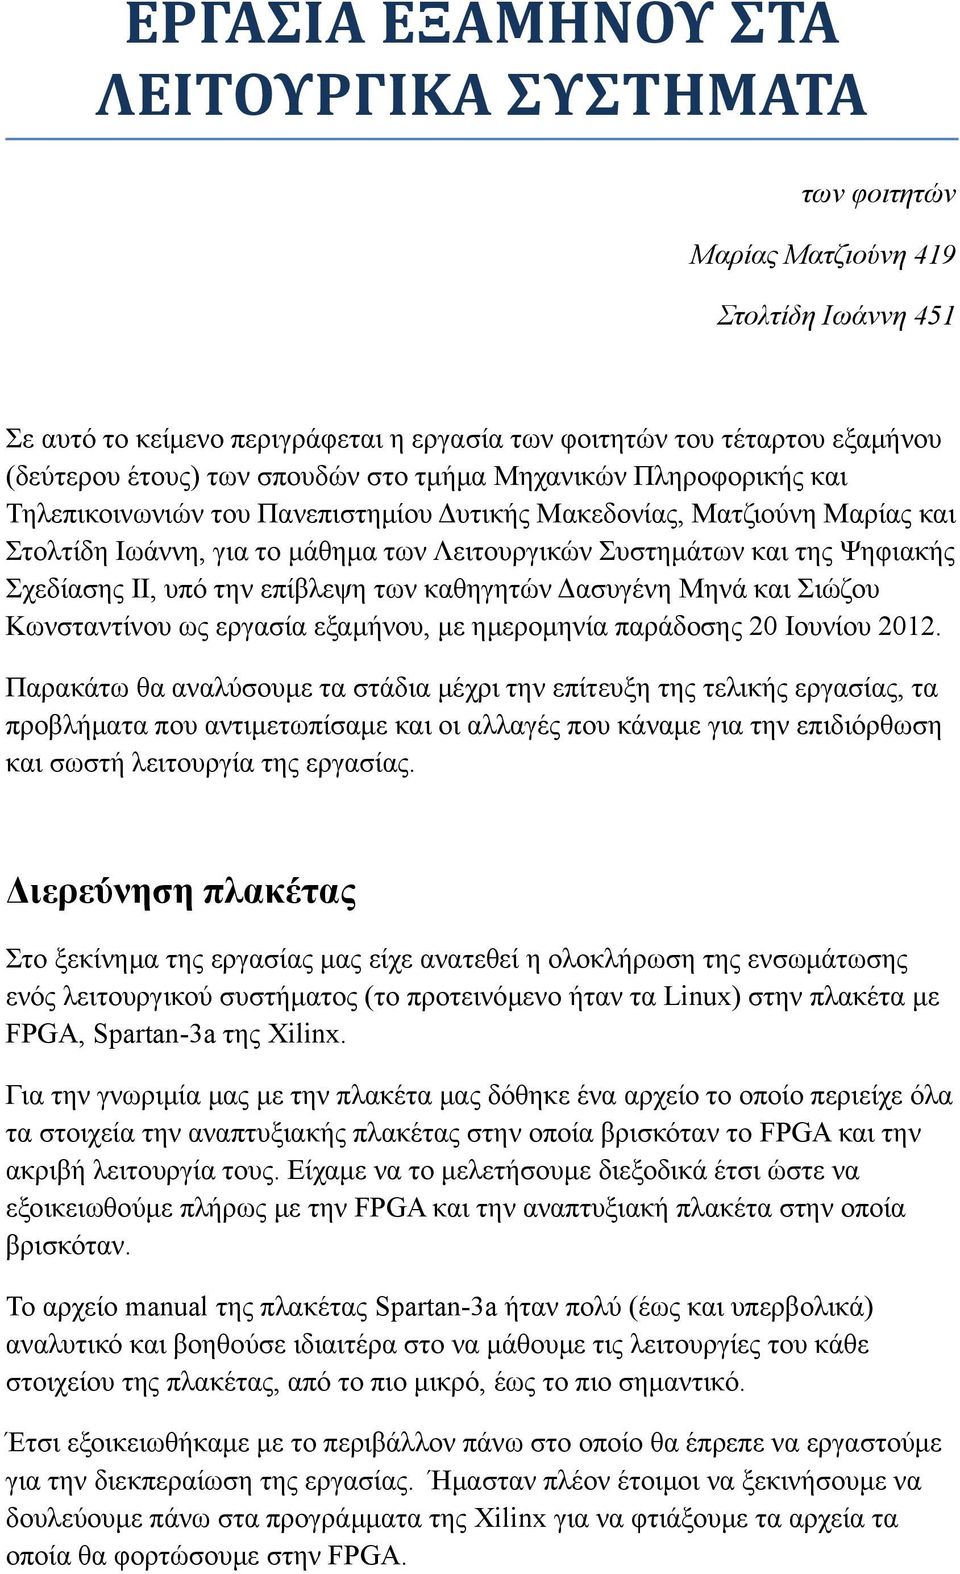 Σχεδίασης ΙΙ, υπό την επίβλεψη των καθηγητών Δασυγένη Μηνά και Σιώζου Κωνσταντίνου ως εργασία εξαμήνου, με ημερομηνία παράδοσης 20 Ιουνίου 2012.